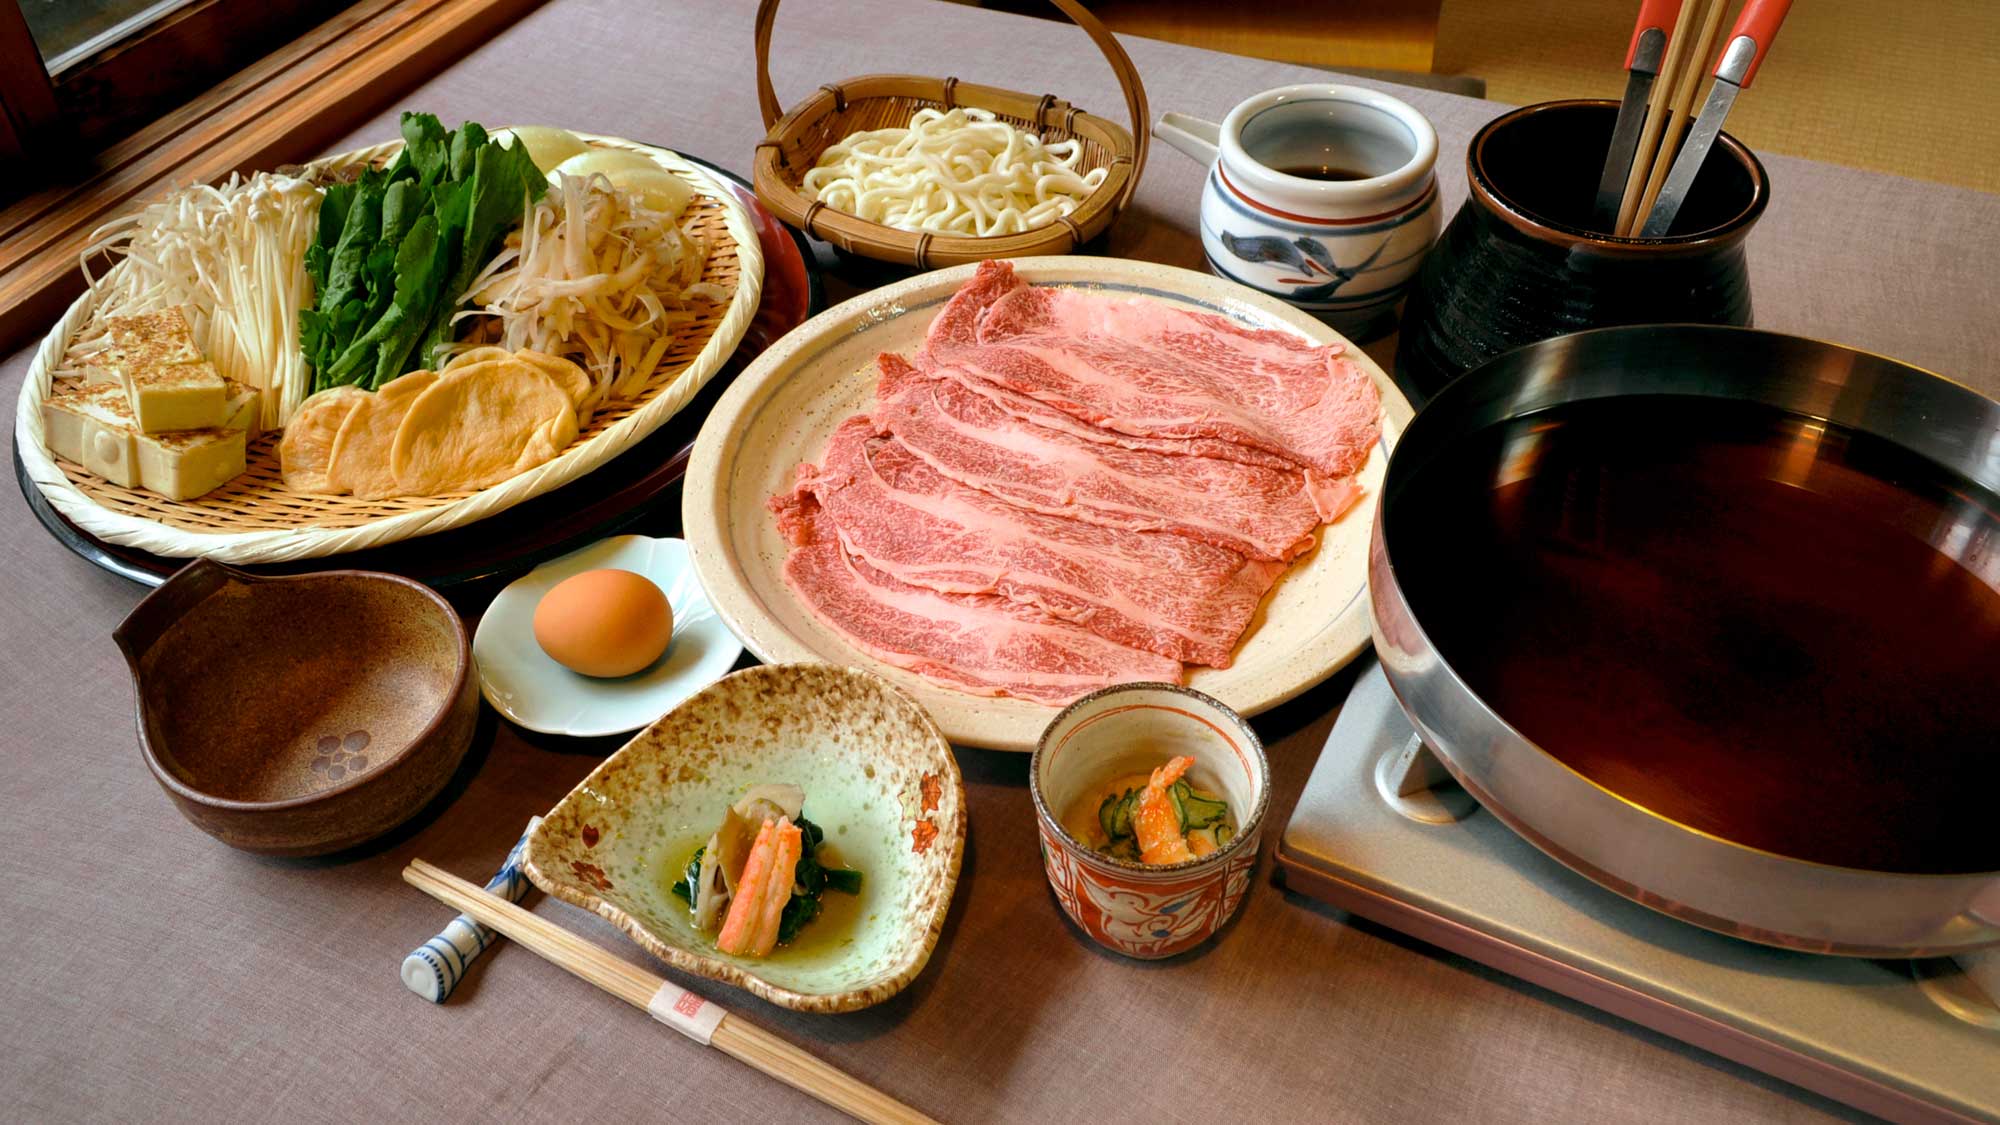 【奈義和牛のすき焼き】美しいサシのはいったお肉を割り下で、関東風にお召し上がりいただきます。